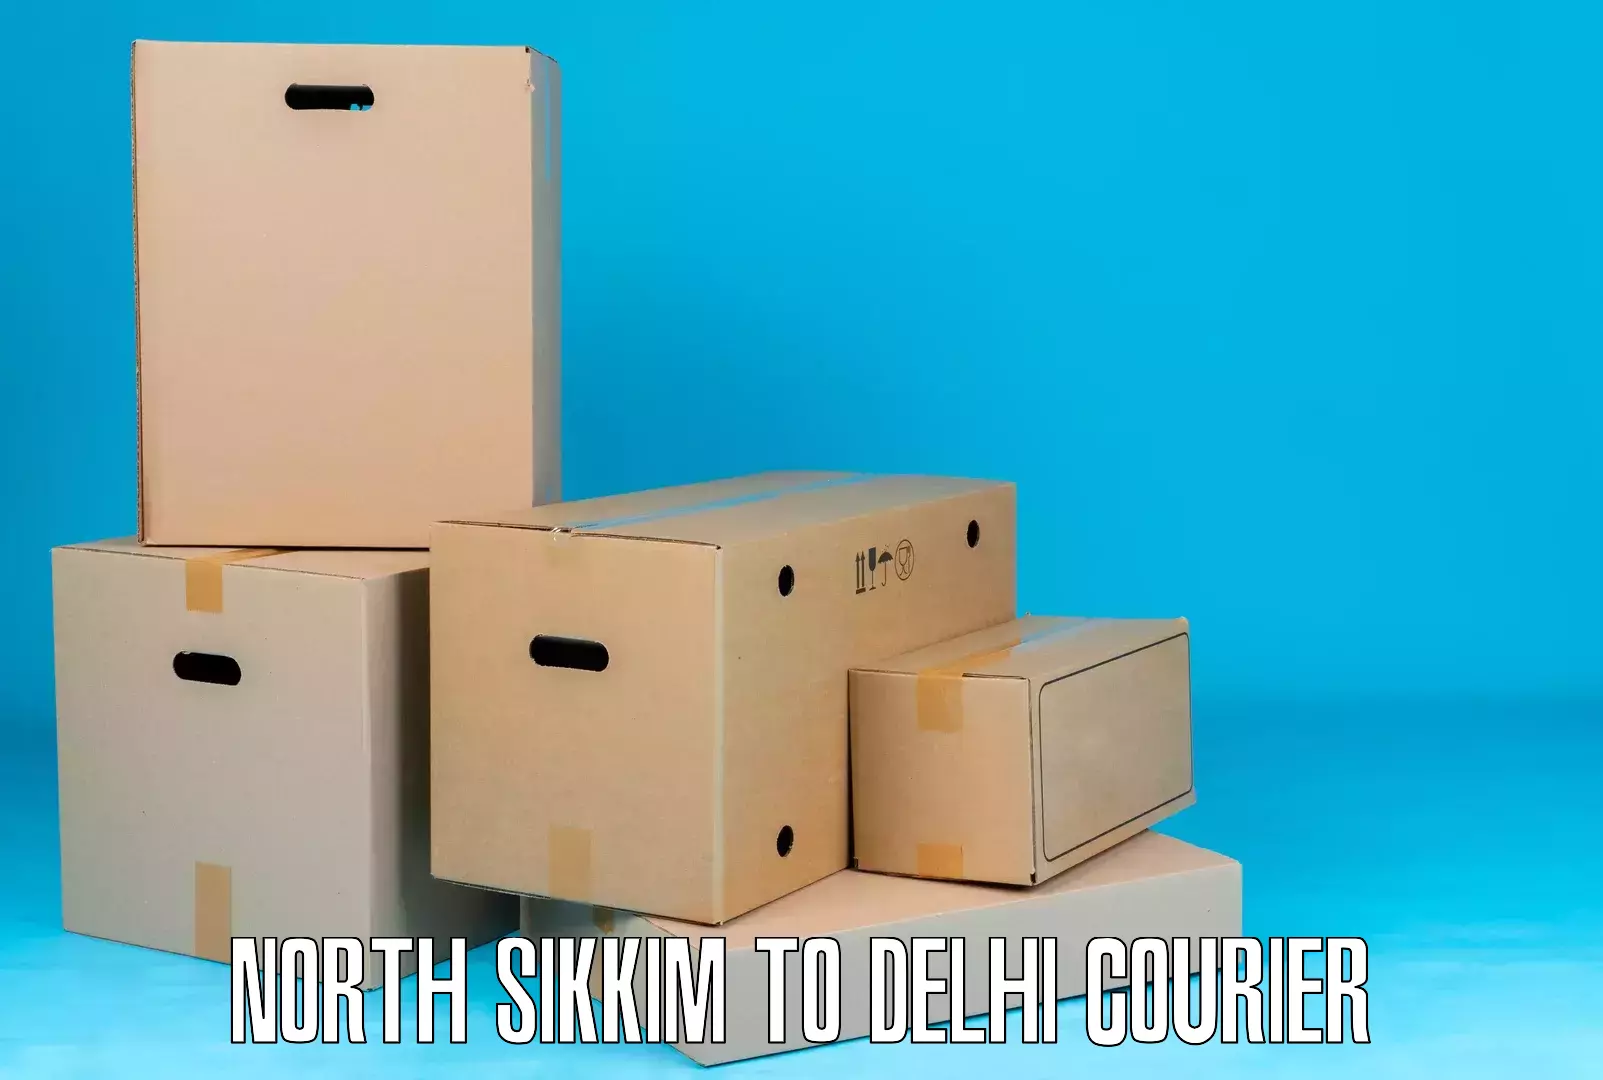 Speedy delivery service North Sikkim to Ramesh Nagar